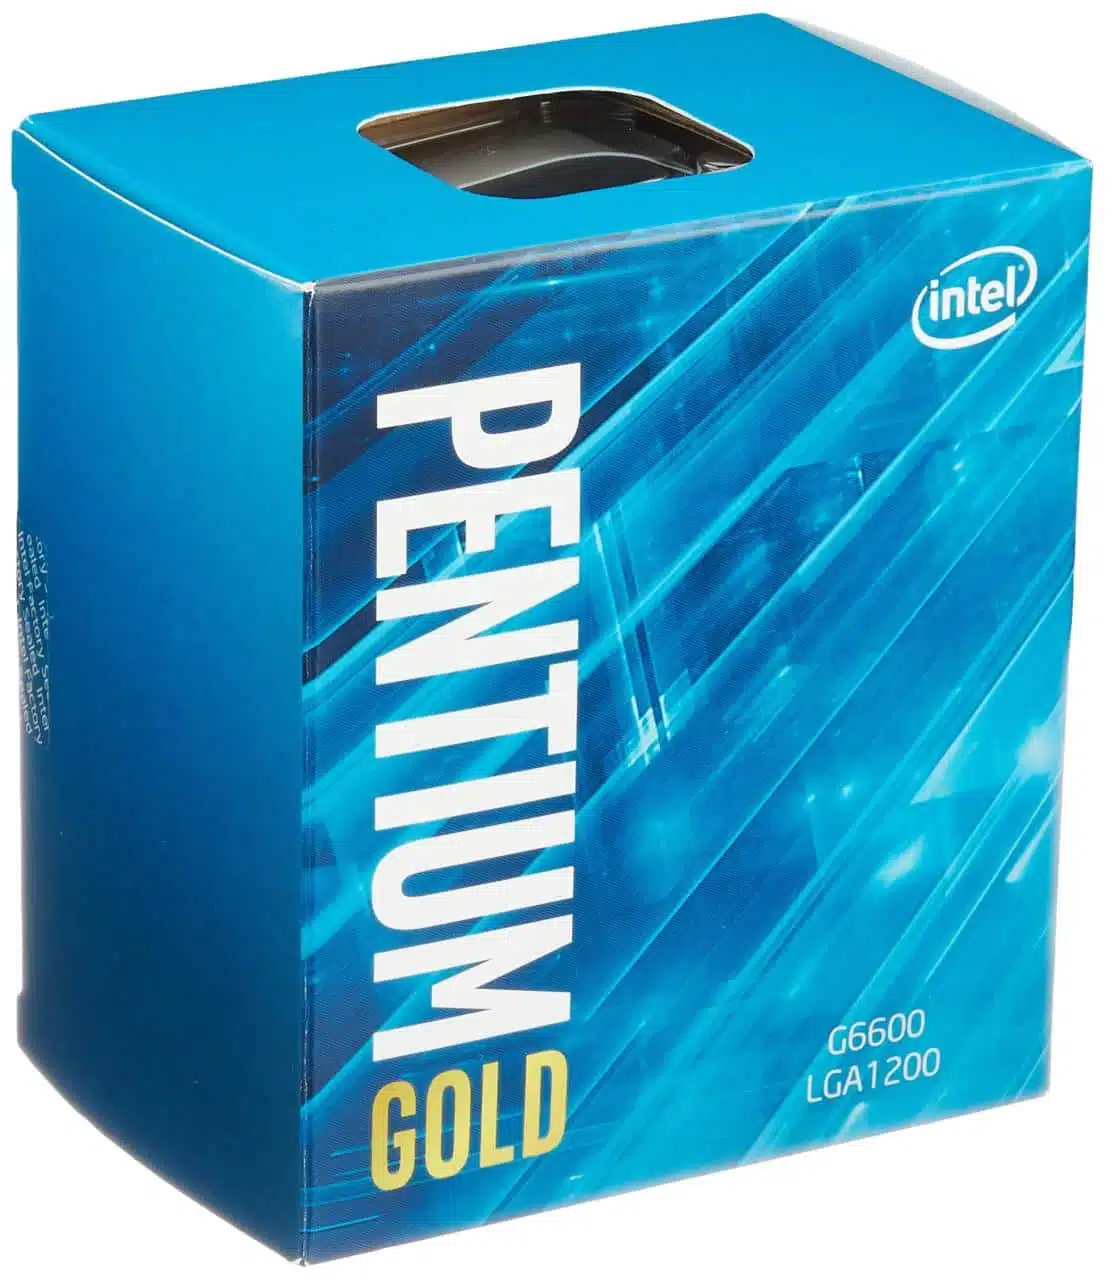 Intel Pentium Gold G-6600 2 nhân 4 luồng với xung nhịp 4.1 GHz